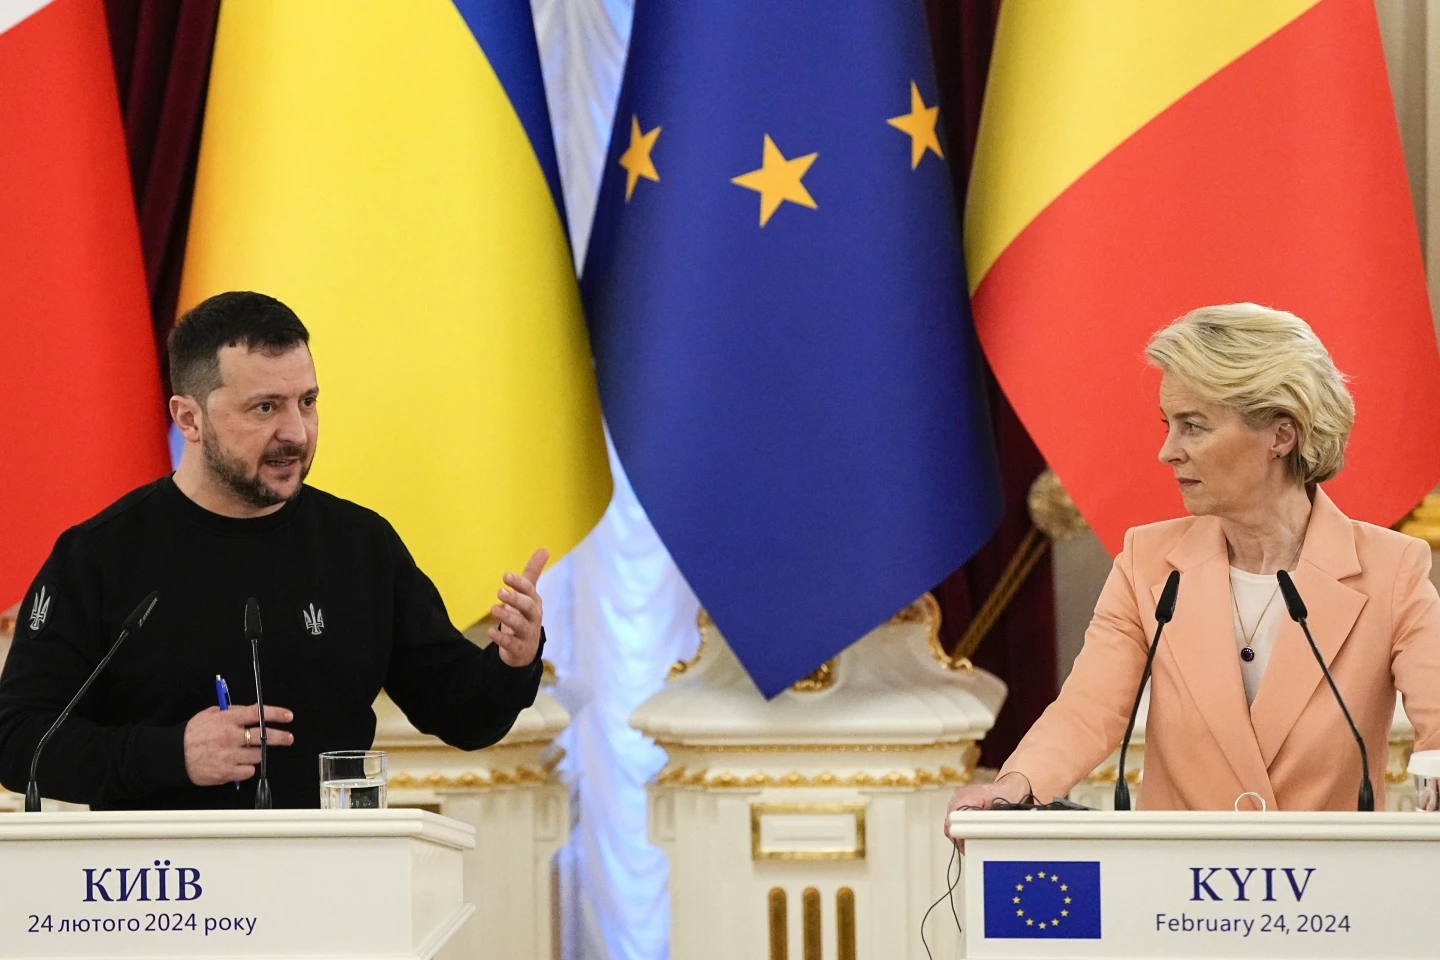 ukraina dhe moldavia do te nisin bisedimet e anetaresimit ne be eshte nje enderr e realizuar per udheheqesin e ukraines